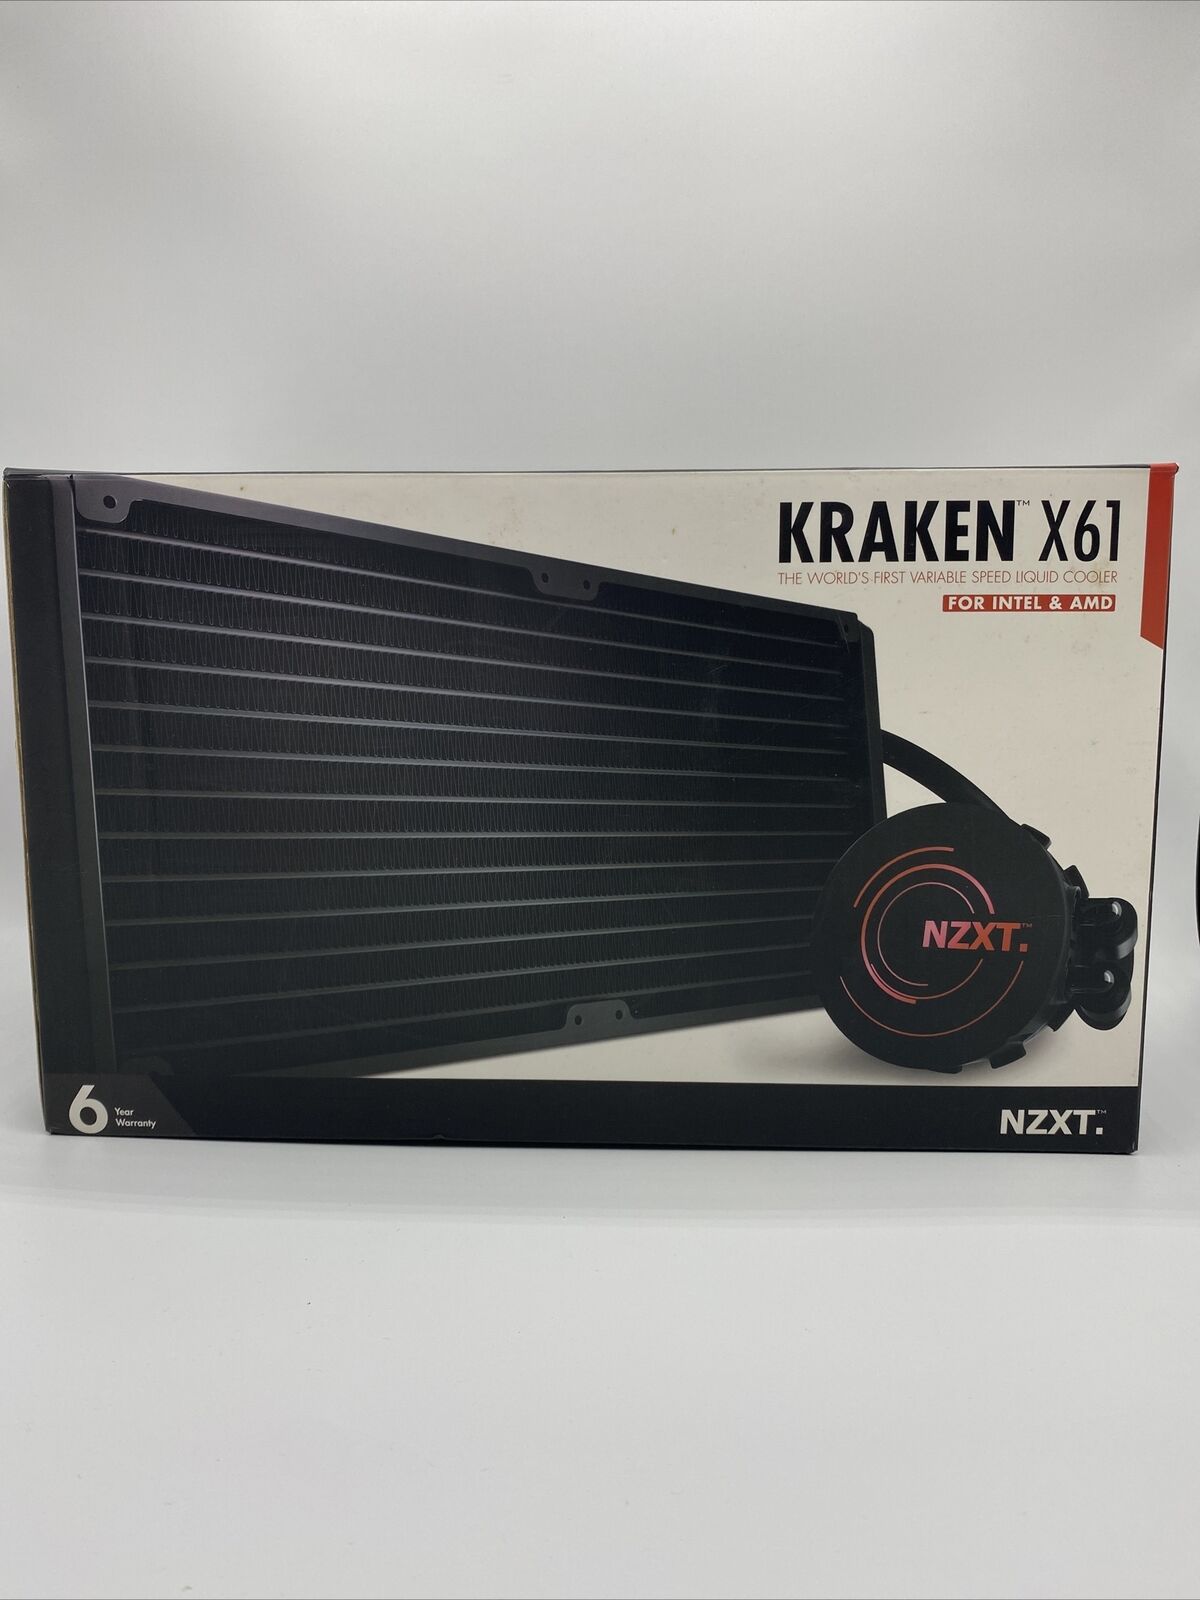 NZXT Max 84% OFF Kraken X61 240mm CPU Liqud Cooler Memphis Mall Speed